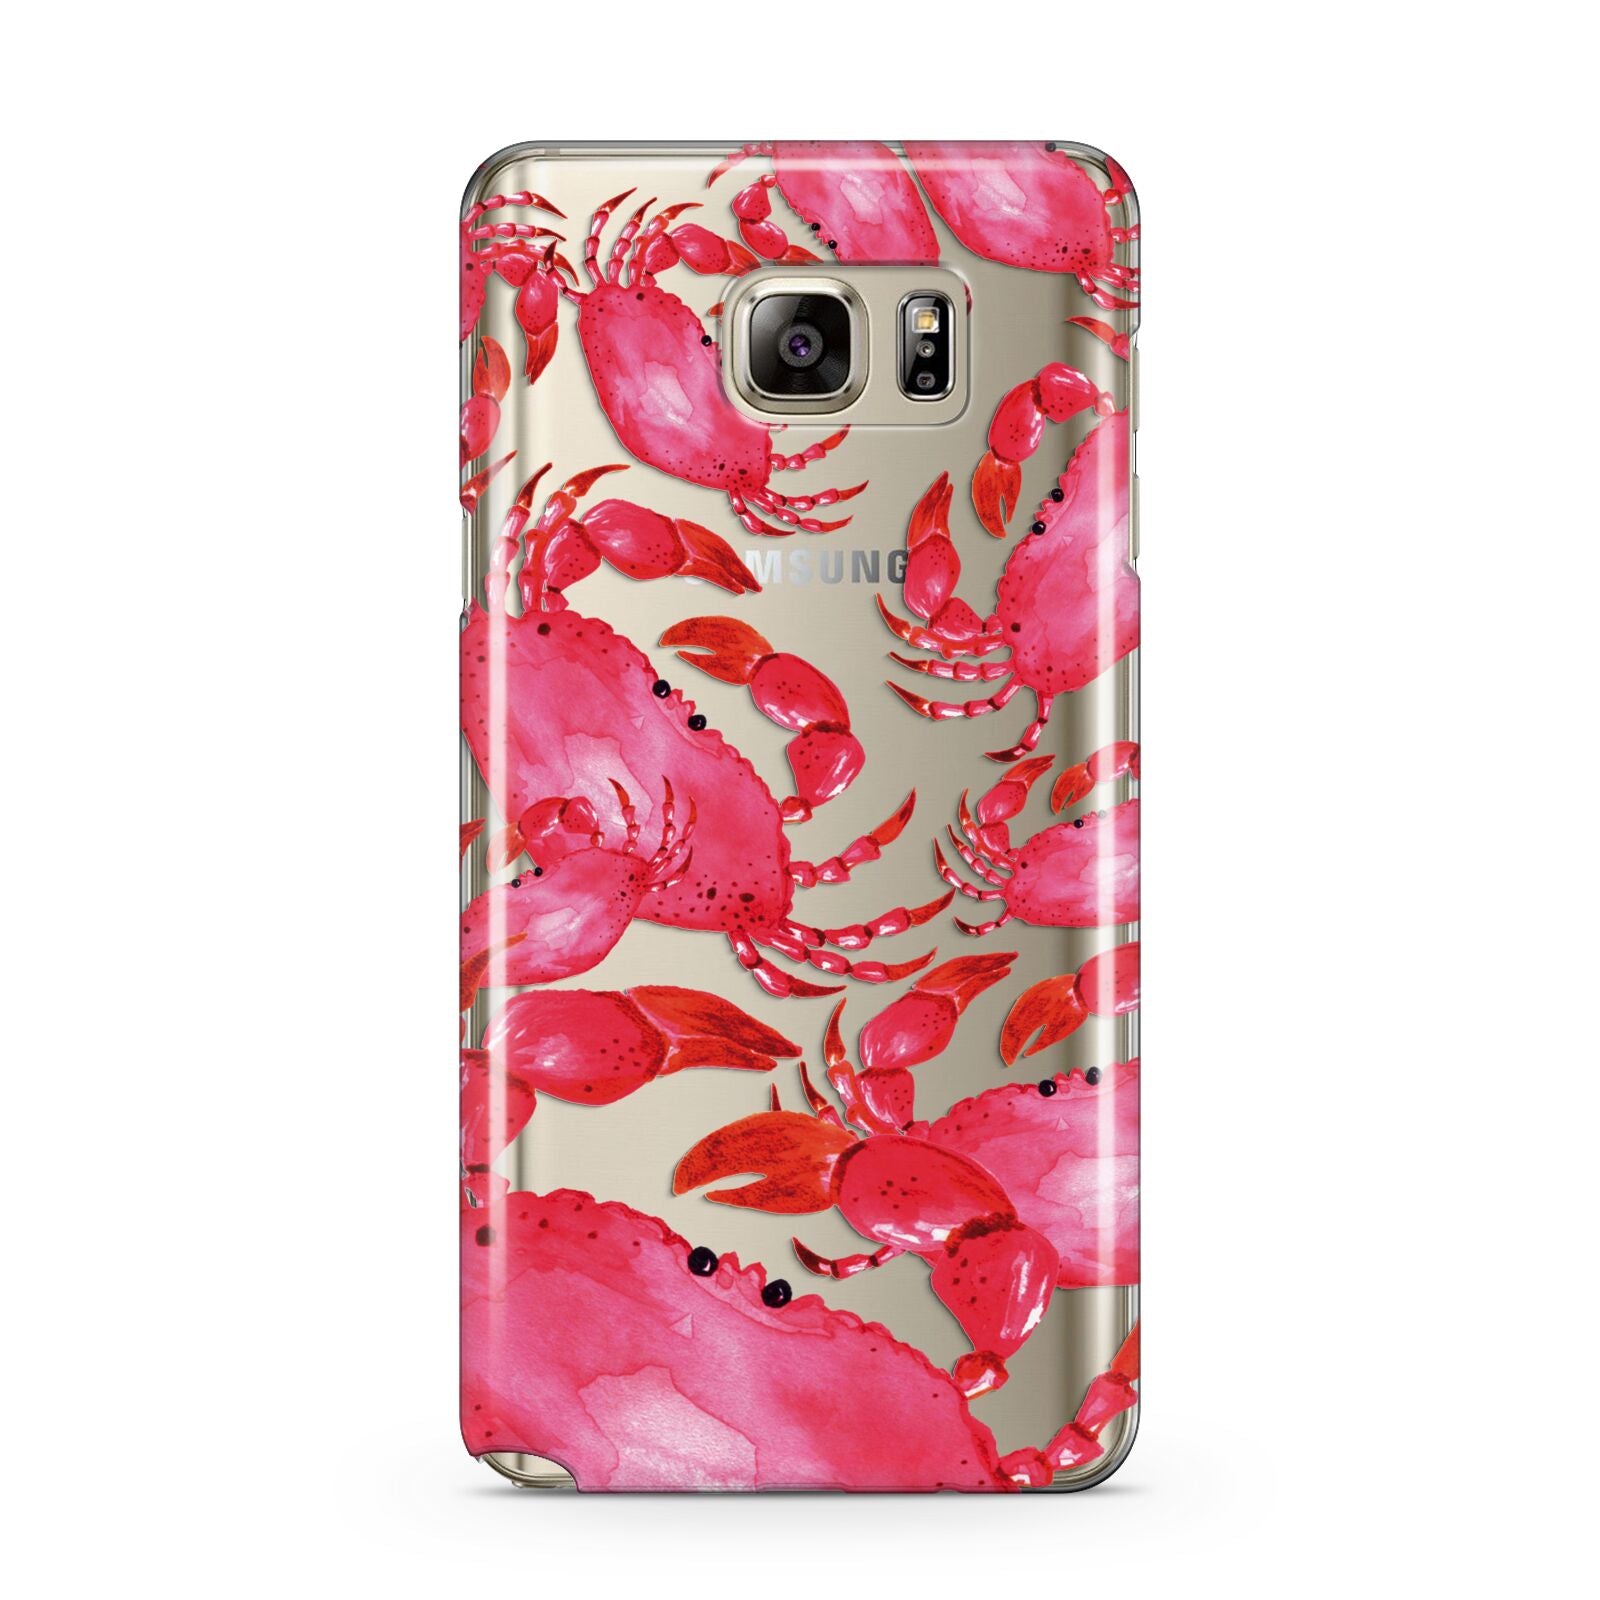 Crab Samsung Galaxy Note 5 Case